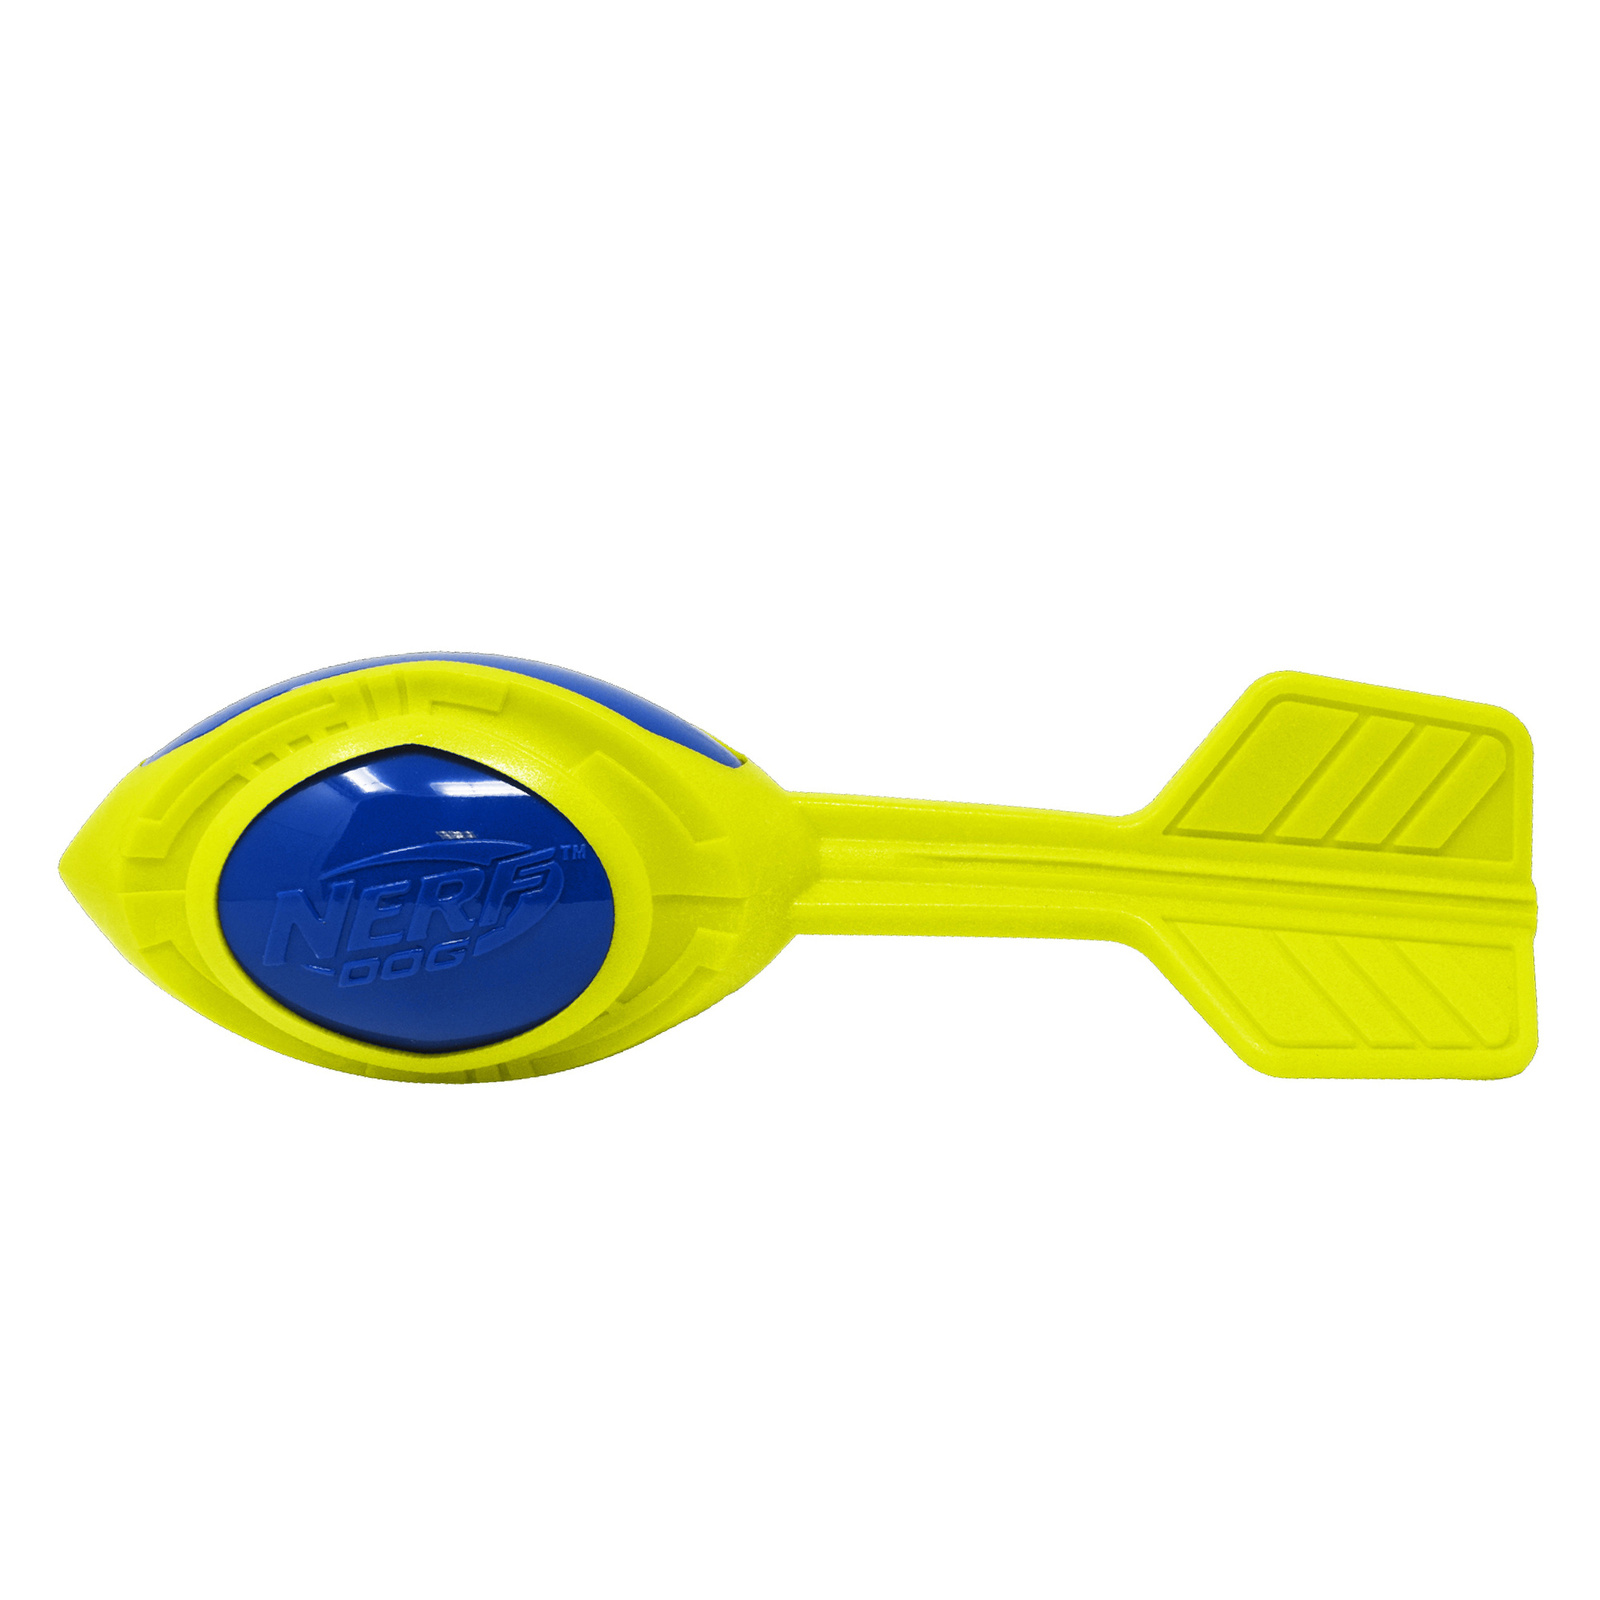 Nerf Nerf снаряд из вспененной резины и термопластичной резины, 30 см (серия Мегатон), (синий/зеленый) (290 г) nerf nerf мяч для регби из термопластичной резины 18 см серия мегатон синий оранжевый 254 г